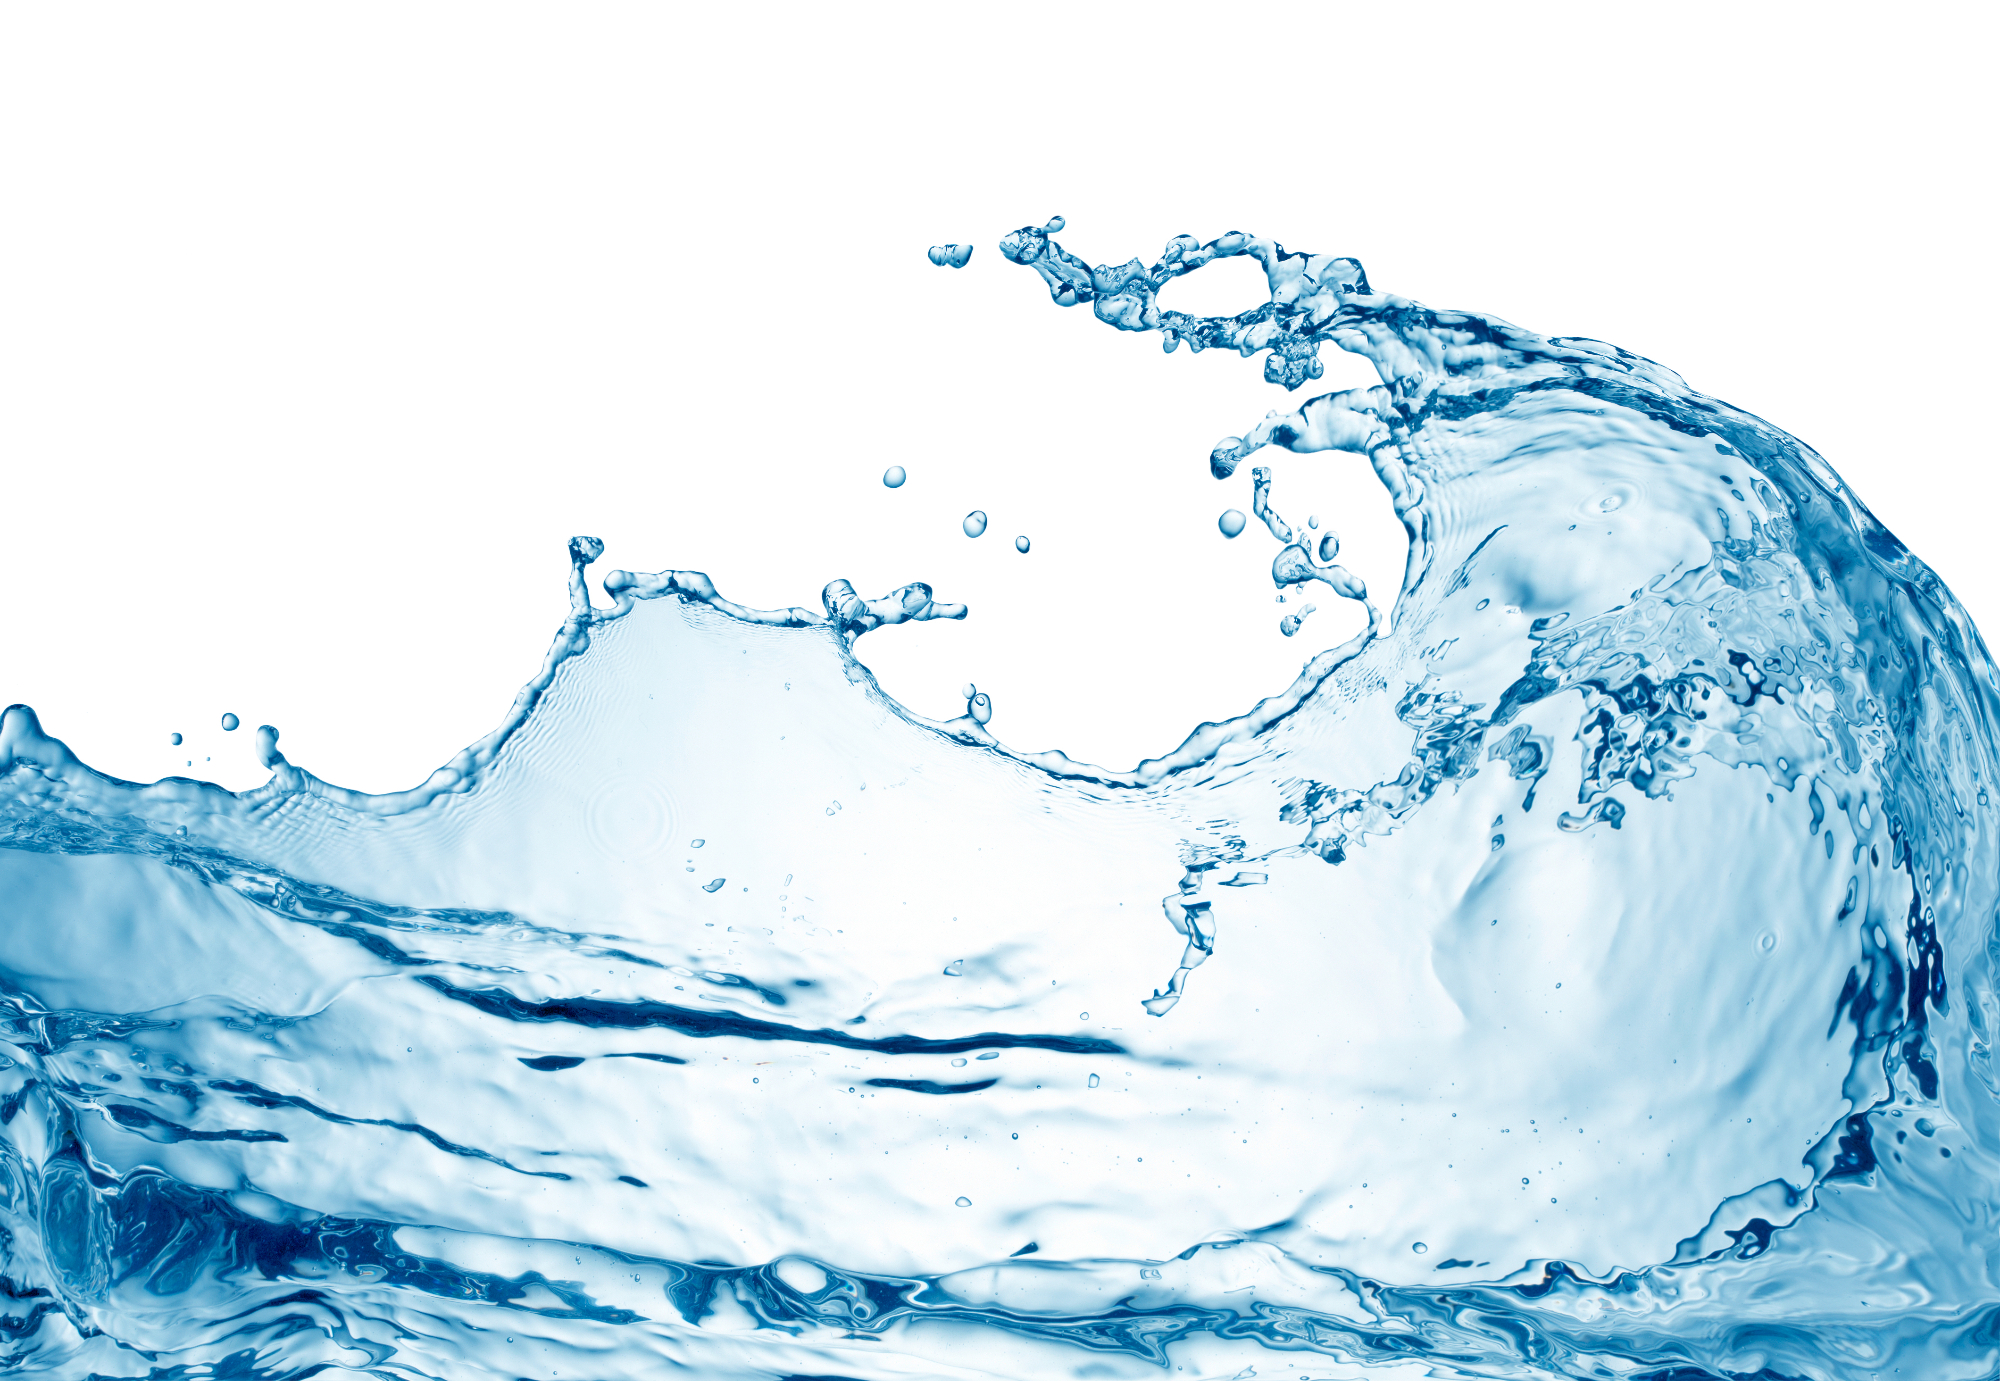 Voda igra veliko vlogo na našem modrem planetu